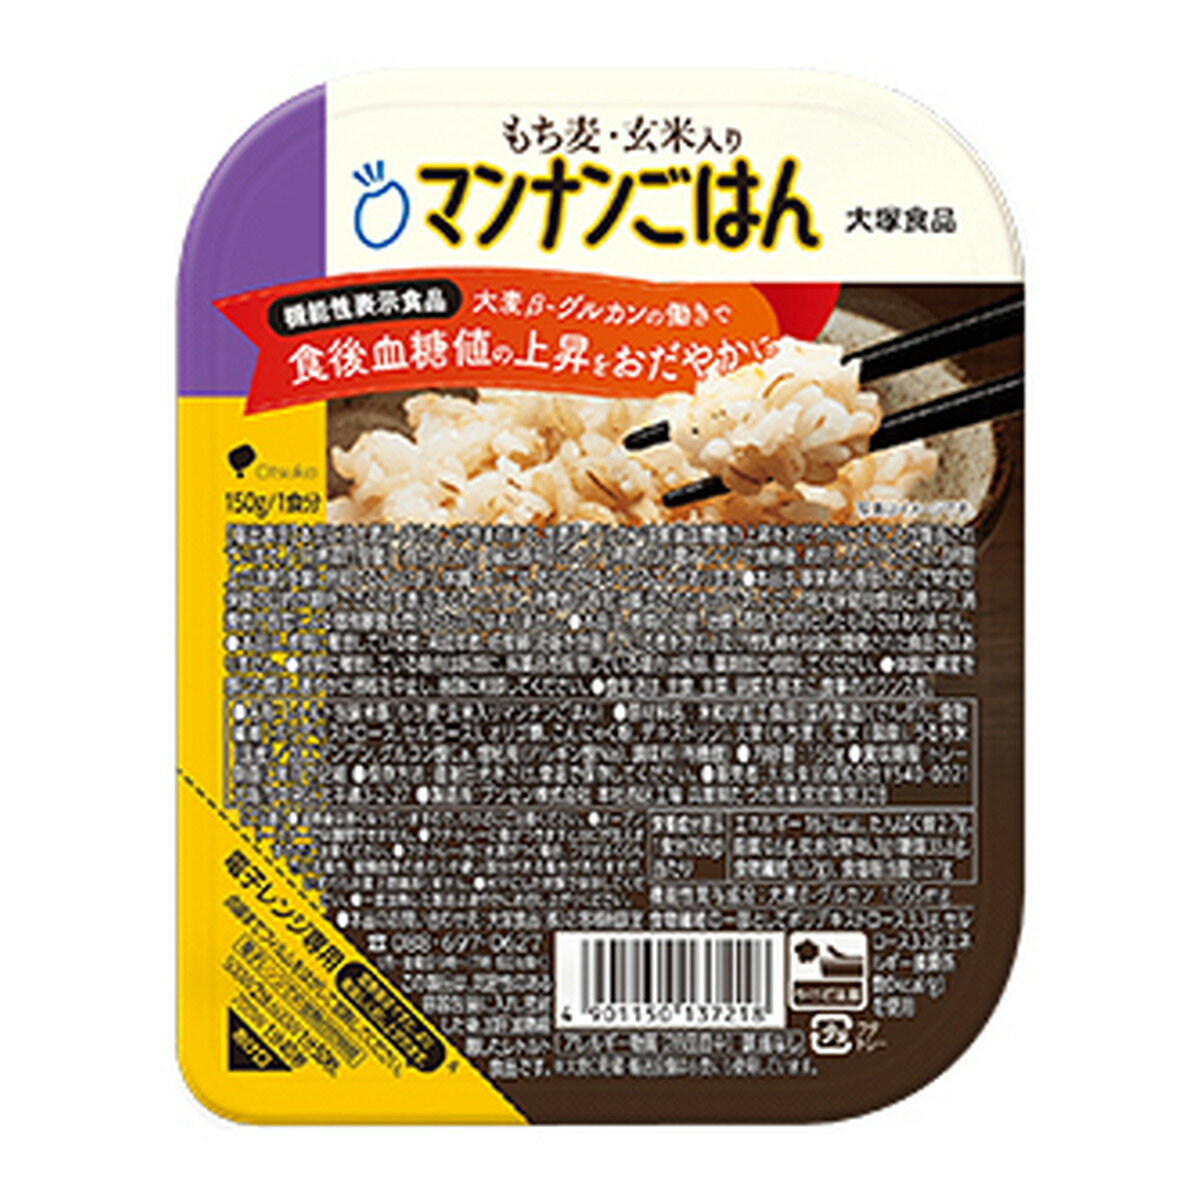 【サマーセール】大塚食品 もち麦